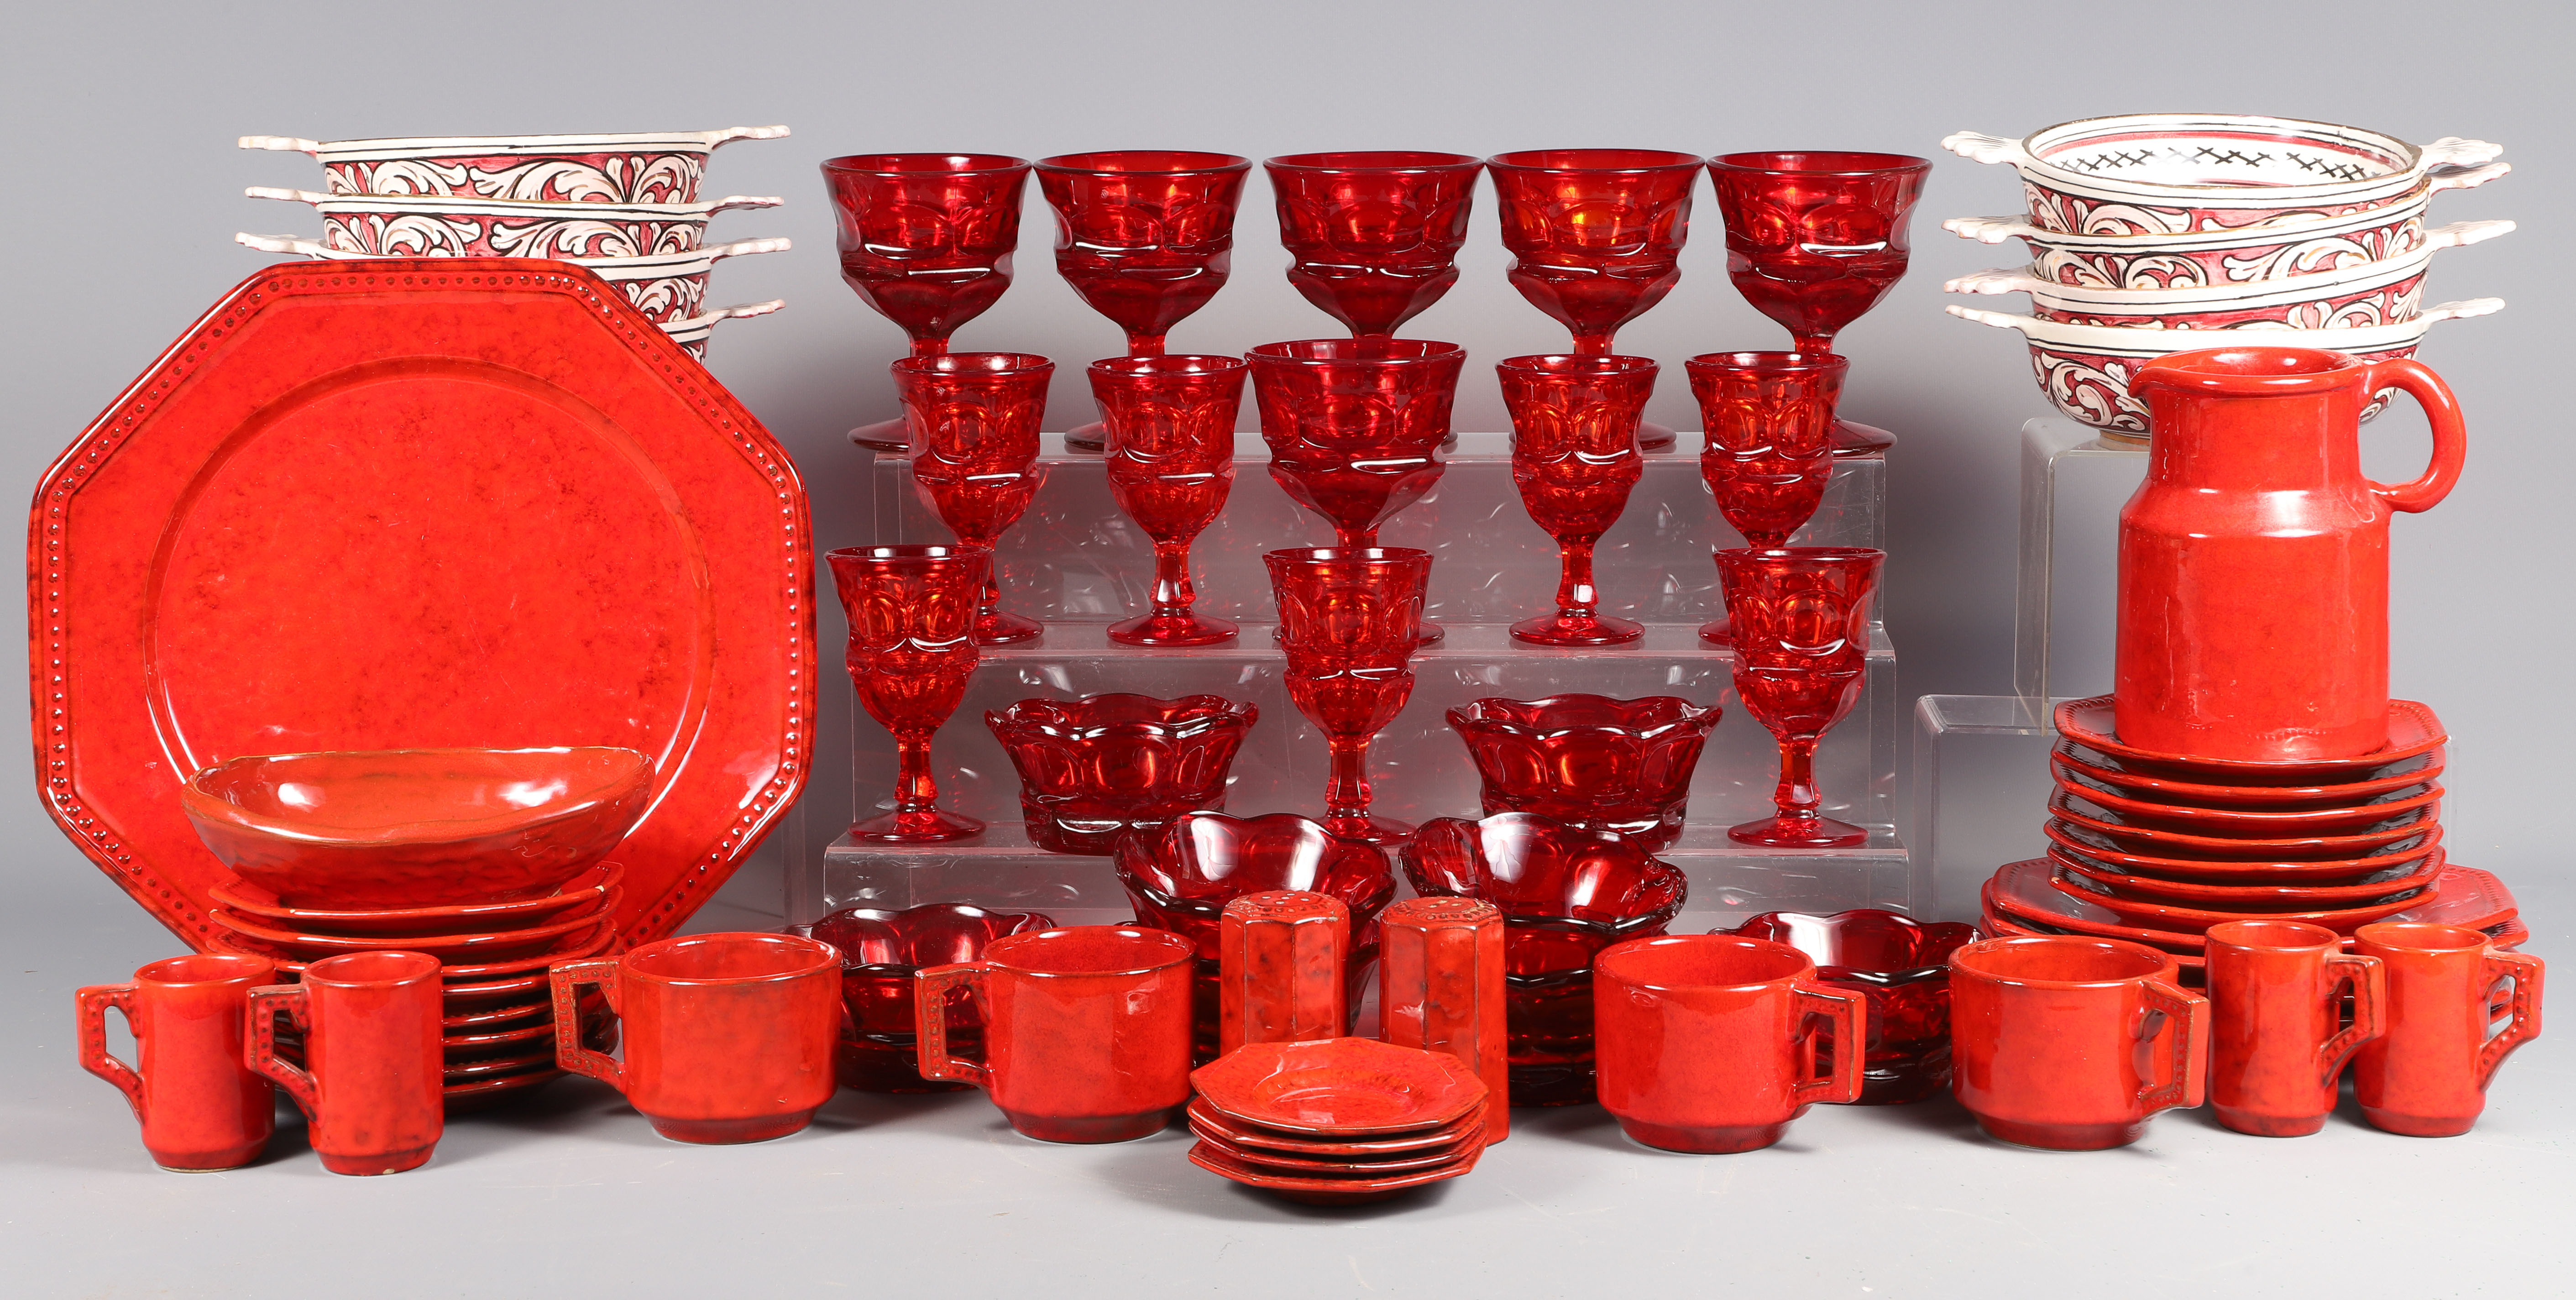 PV Pottery Dinnerware Red Glassware  2e1e6b